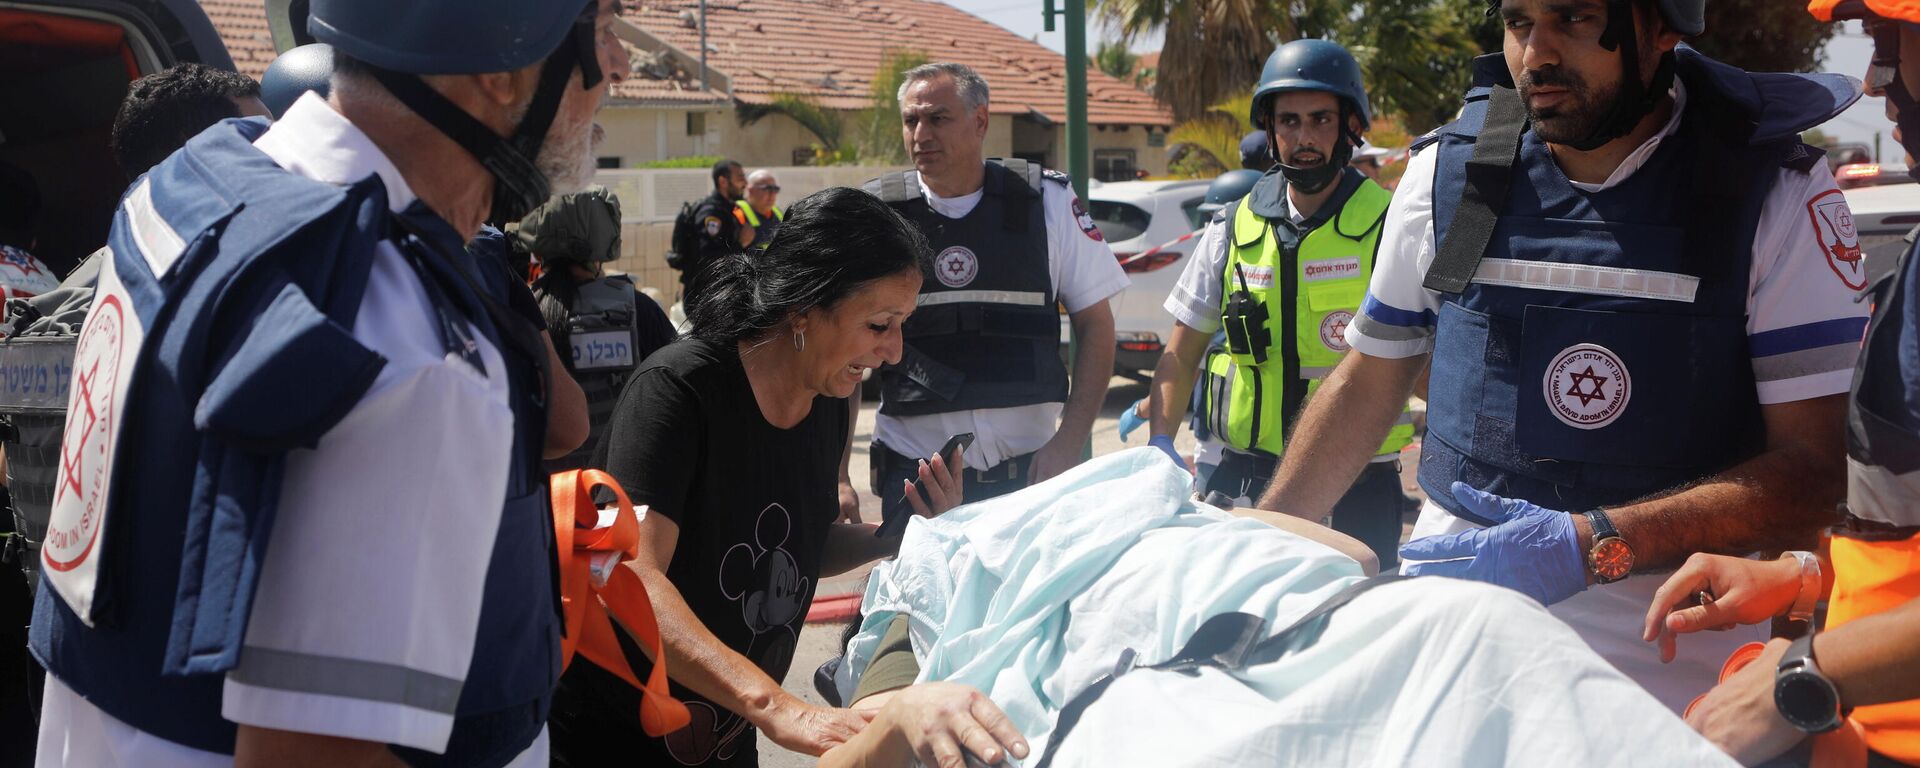 Los médicos evacuan a una persona herida después de que un cohete lanzado desde la Franja de Gaza golpeara una casa en Ashkelon, Israel - Sputnik Mundo, 1920, 11.05.2021